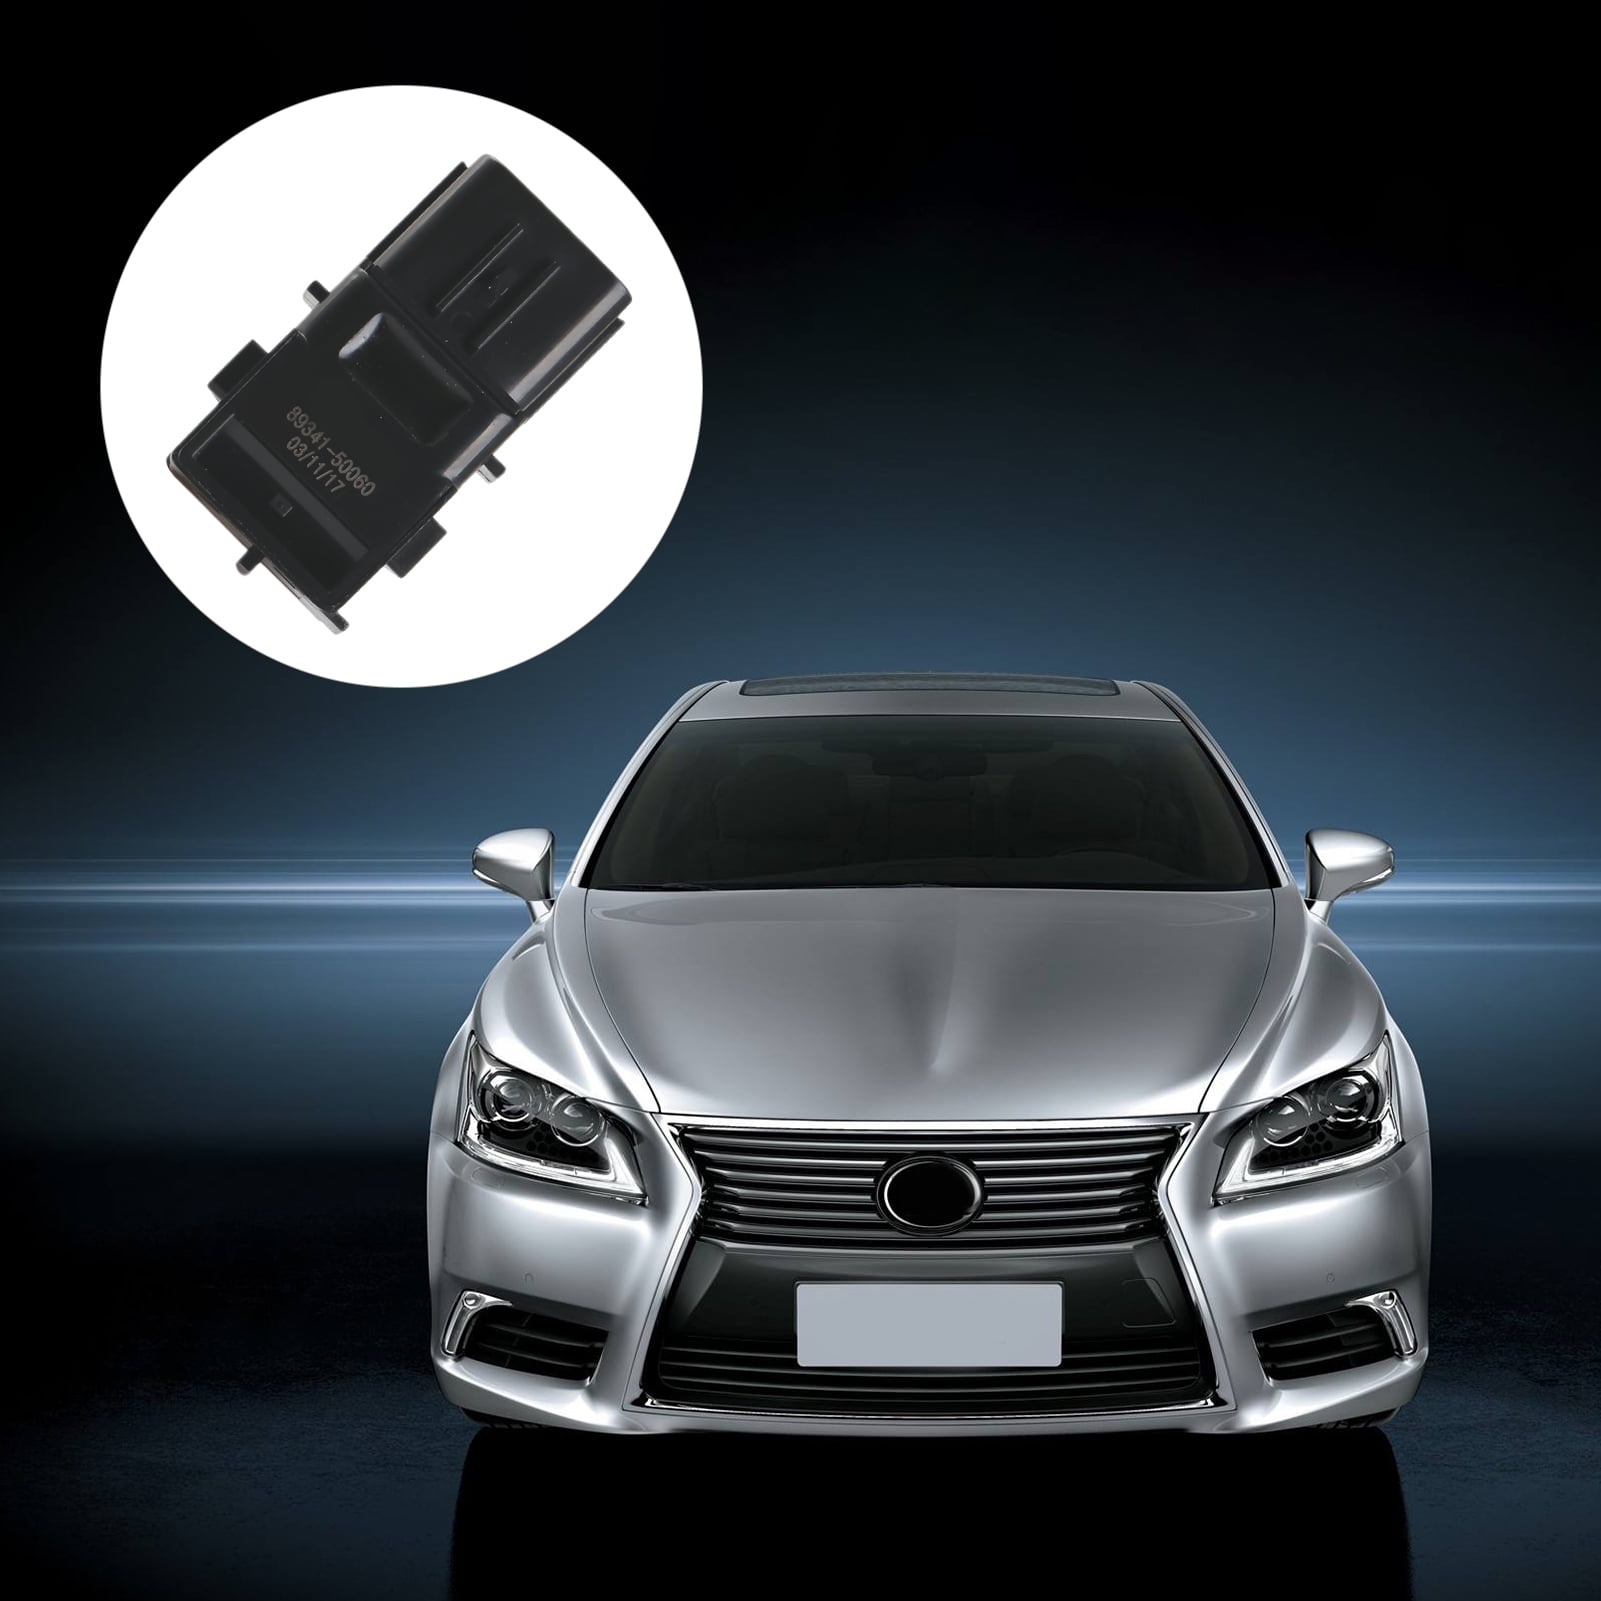 Park Assist Sensor Fit for Lexus GS300 GS350 GS430 GS450h GS460 IS F IS250 IS350 LS430 INEEDUP Reverse Backup Parking Sensor